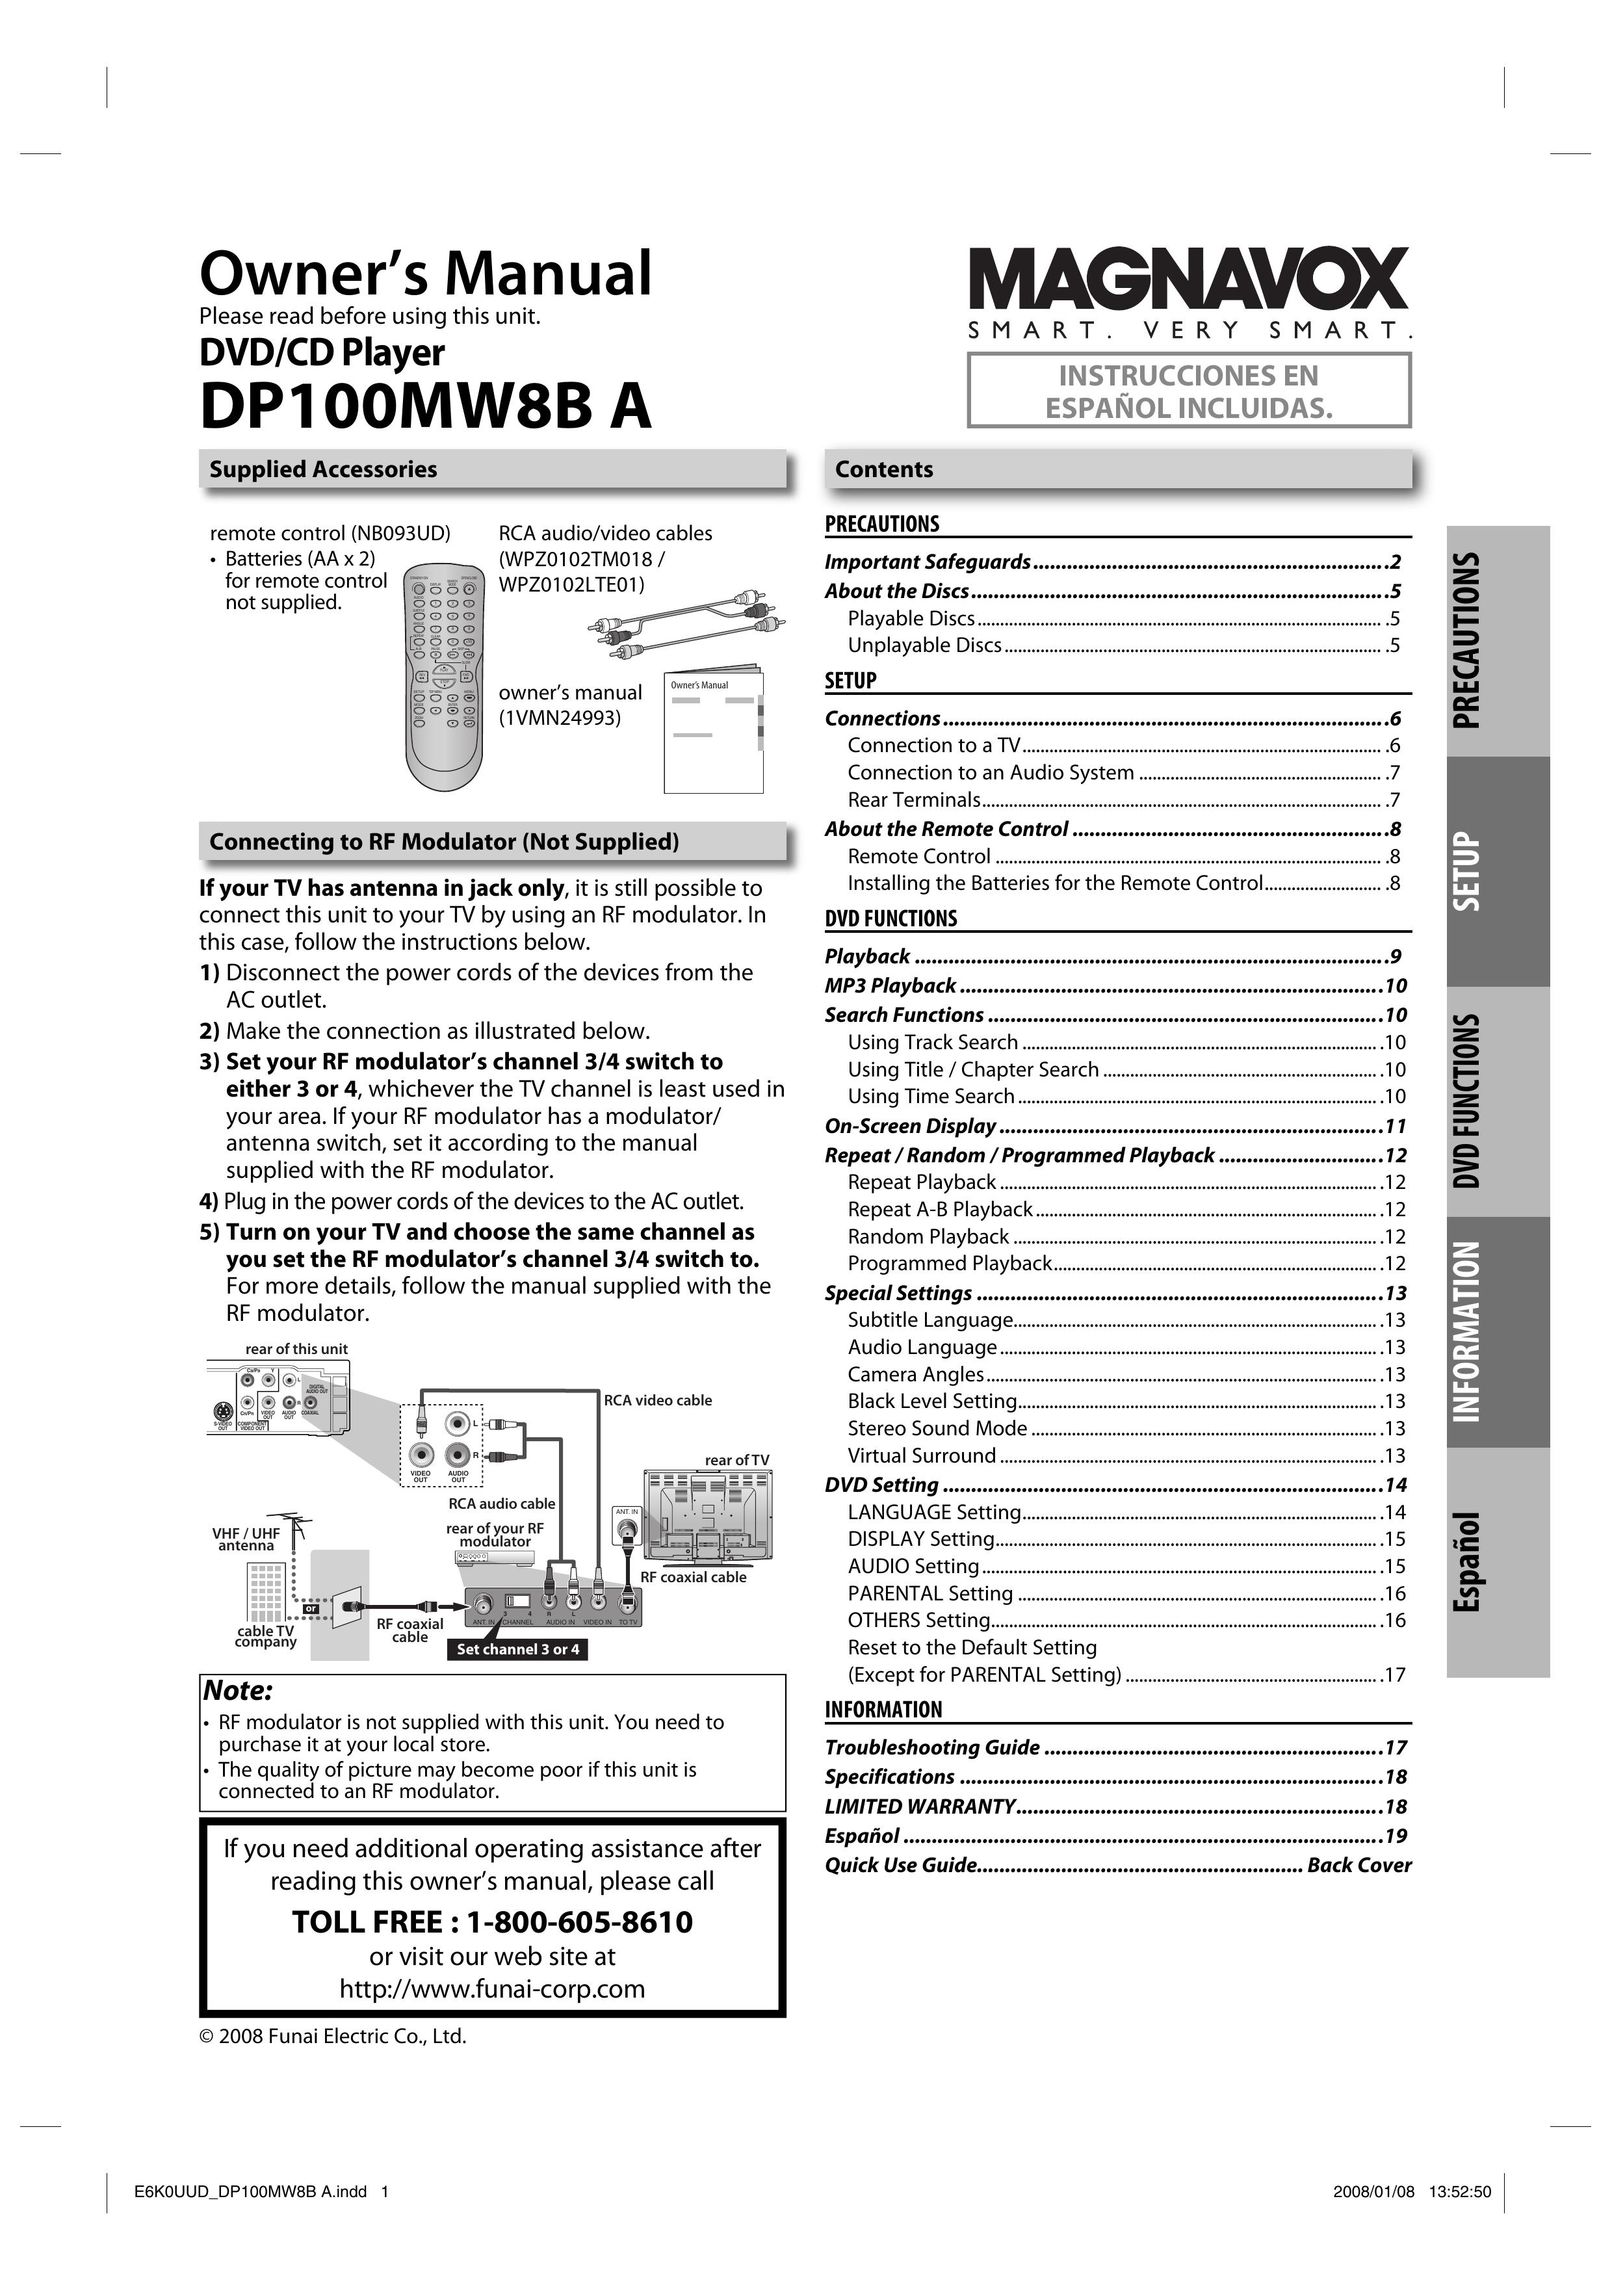 Magnavox DP100MW8B A DVD Player User Manual